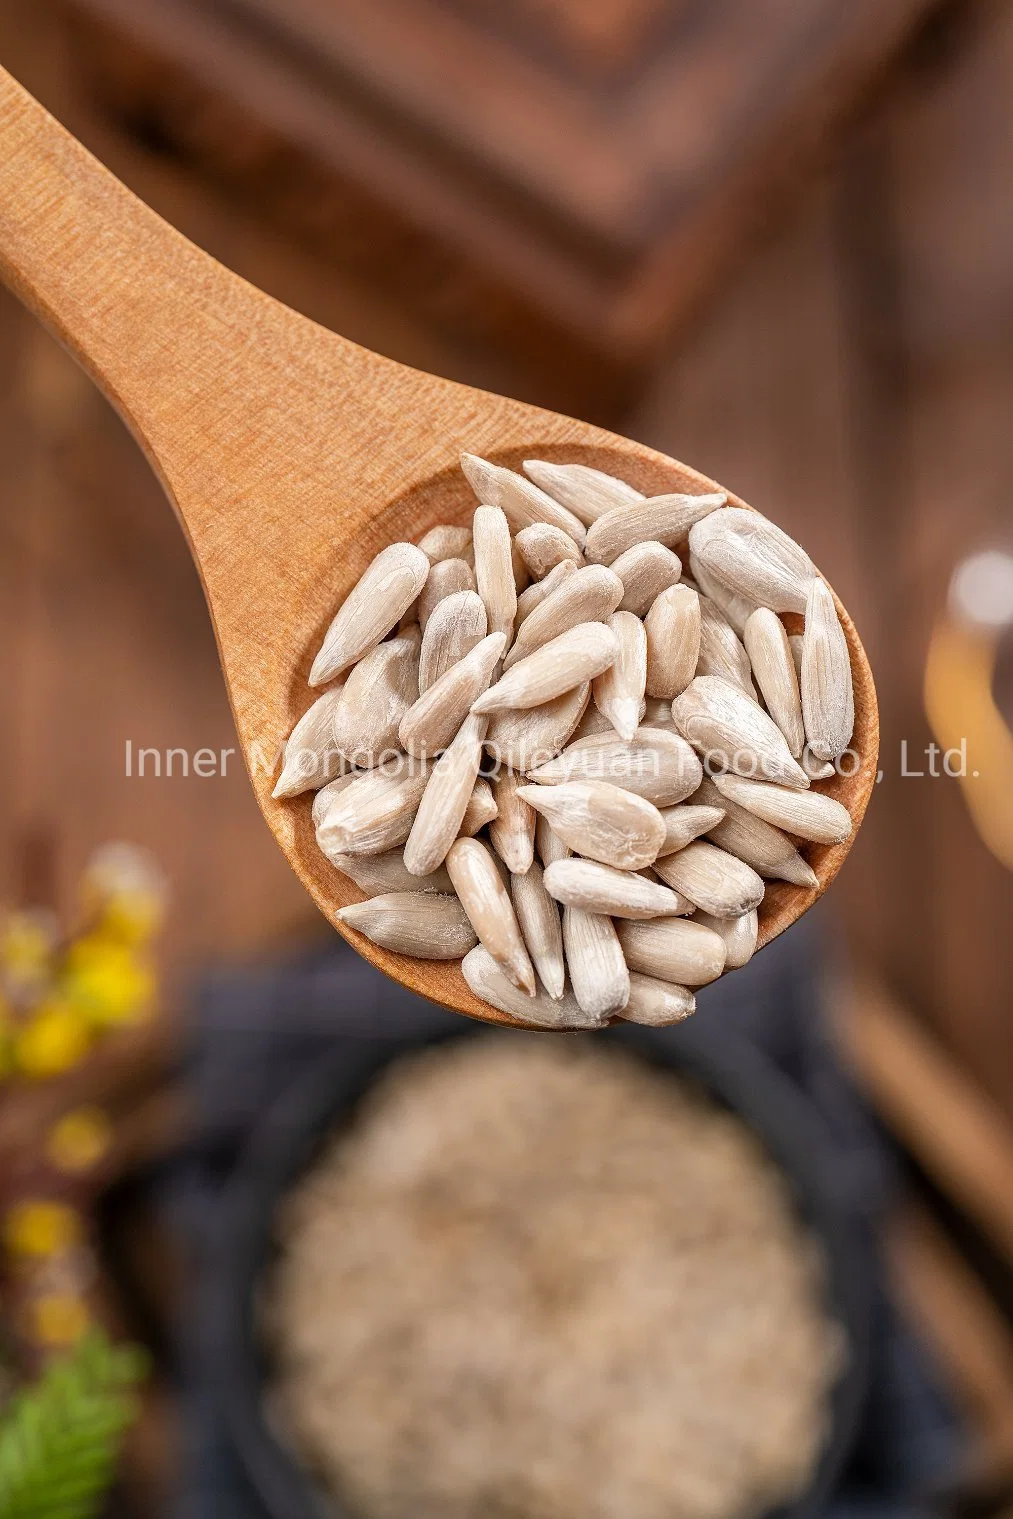 Bulk Vacuum Pack Factory Price Food Ingredient Sunflower Seed Kernels